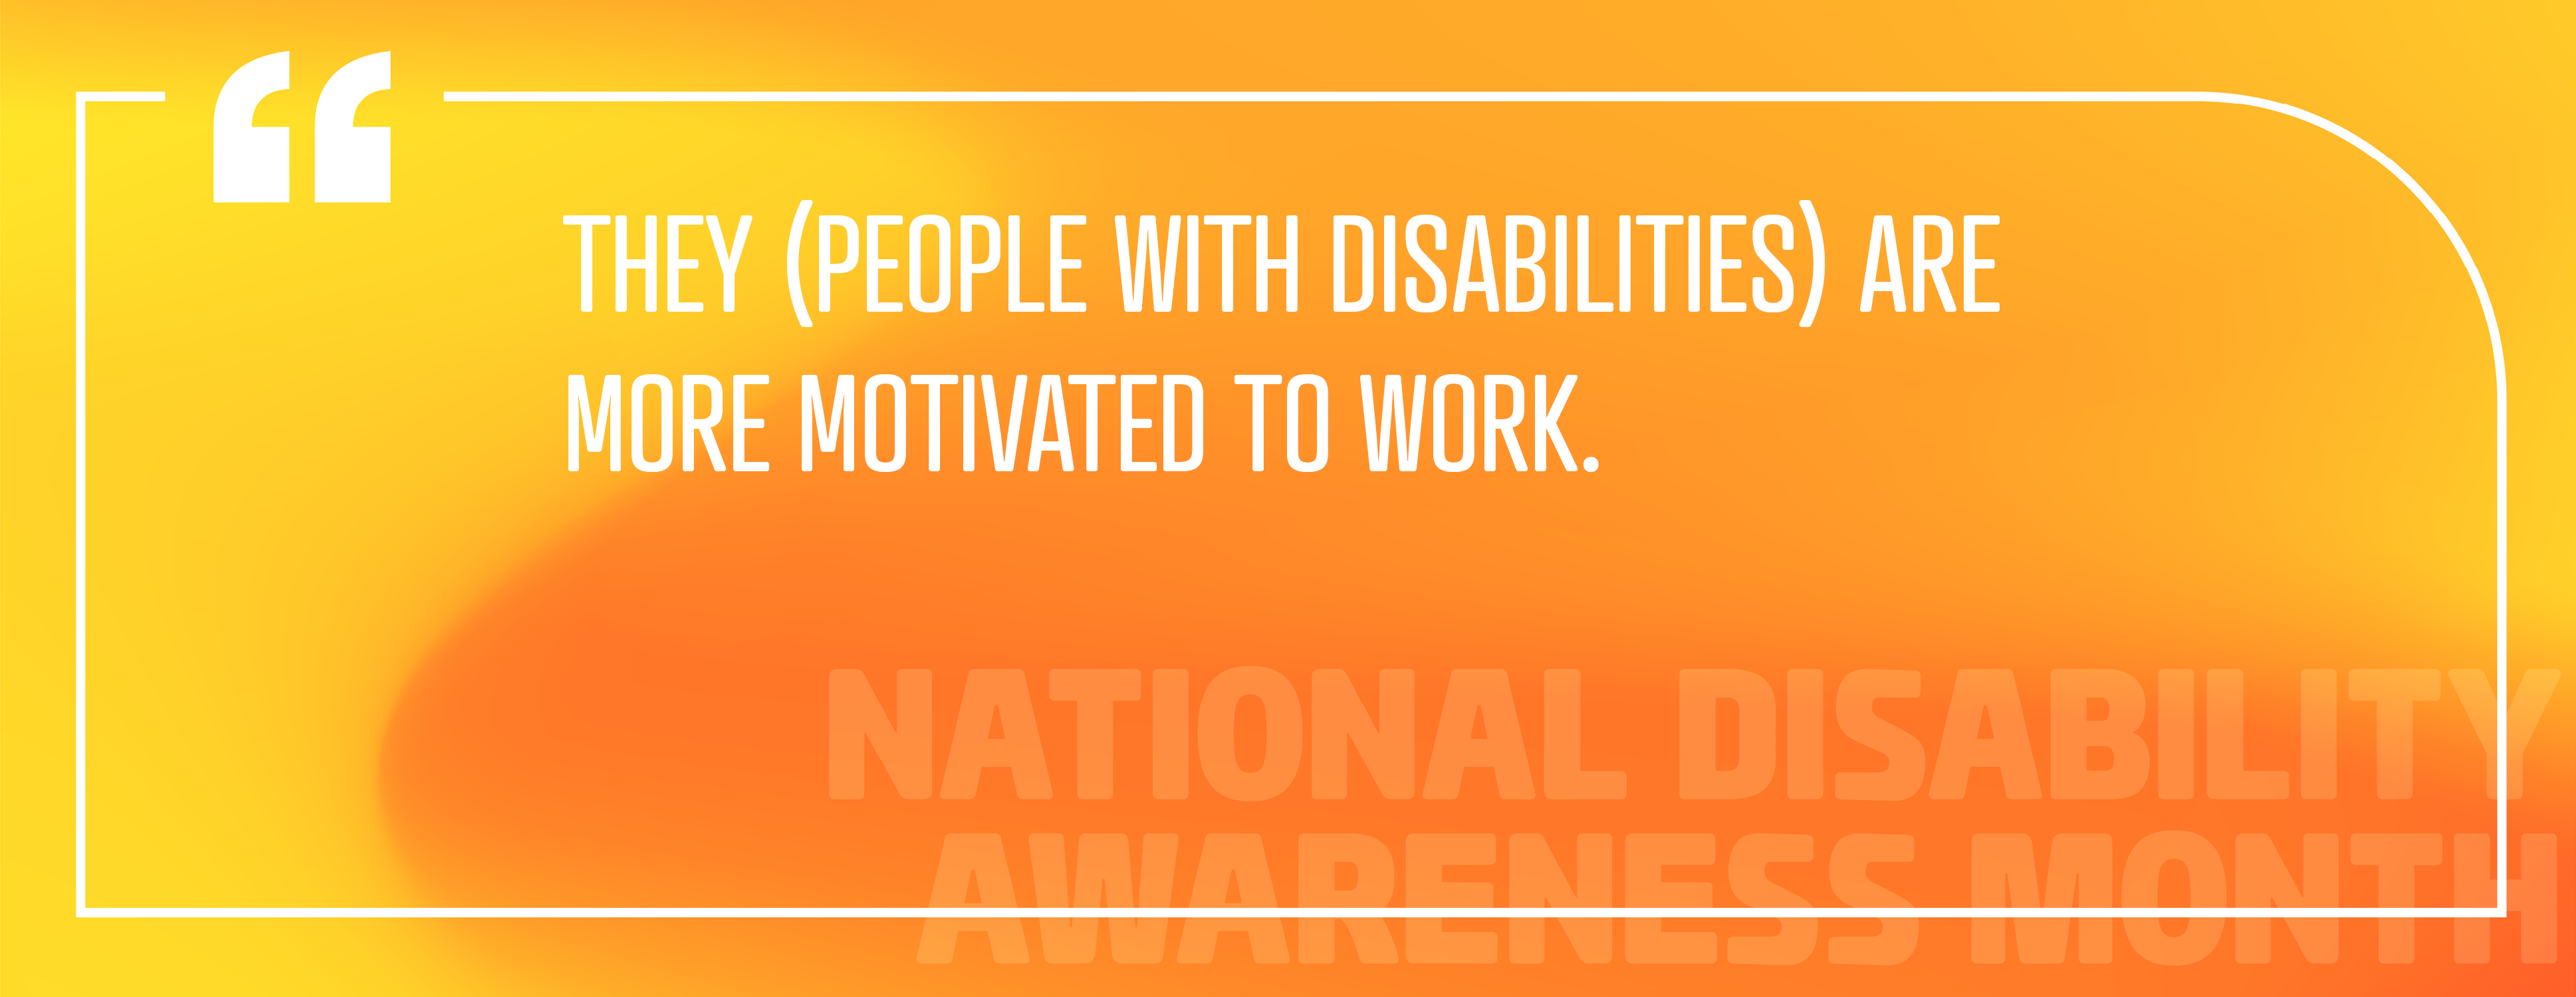 الصورة 5: توظيف الأفراد ذوي الإعاقة